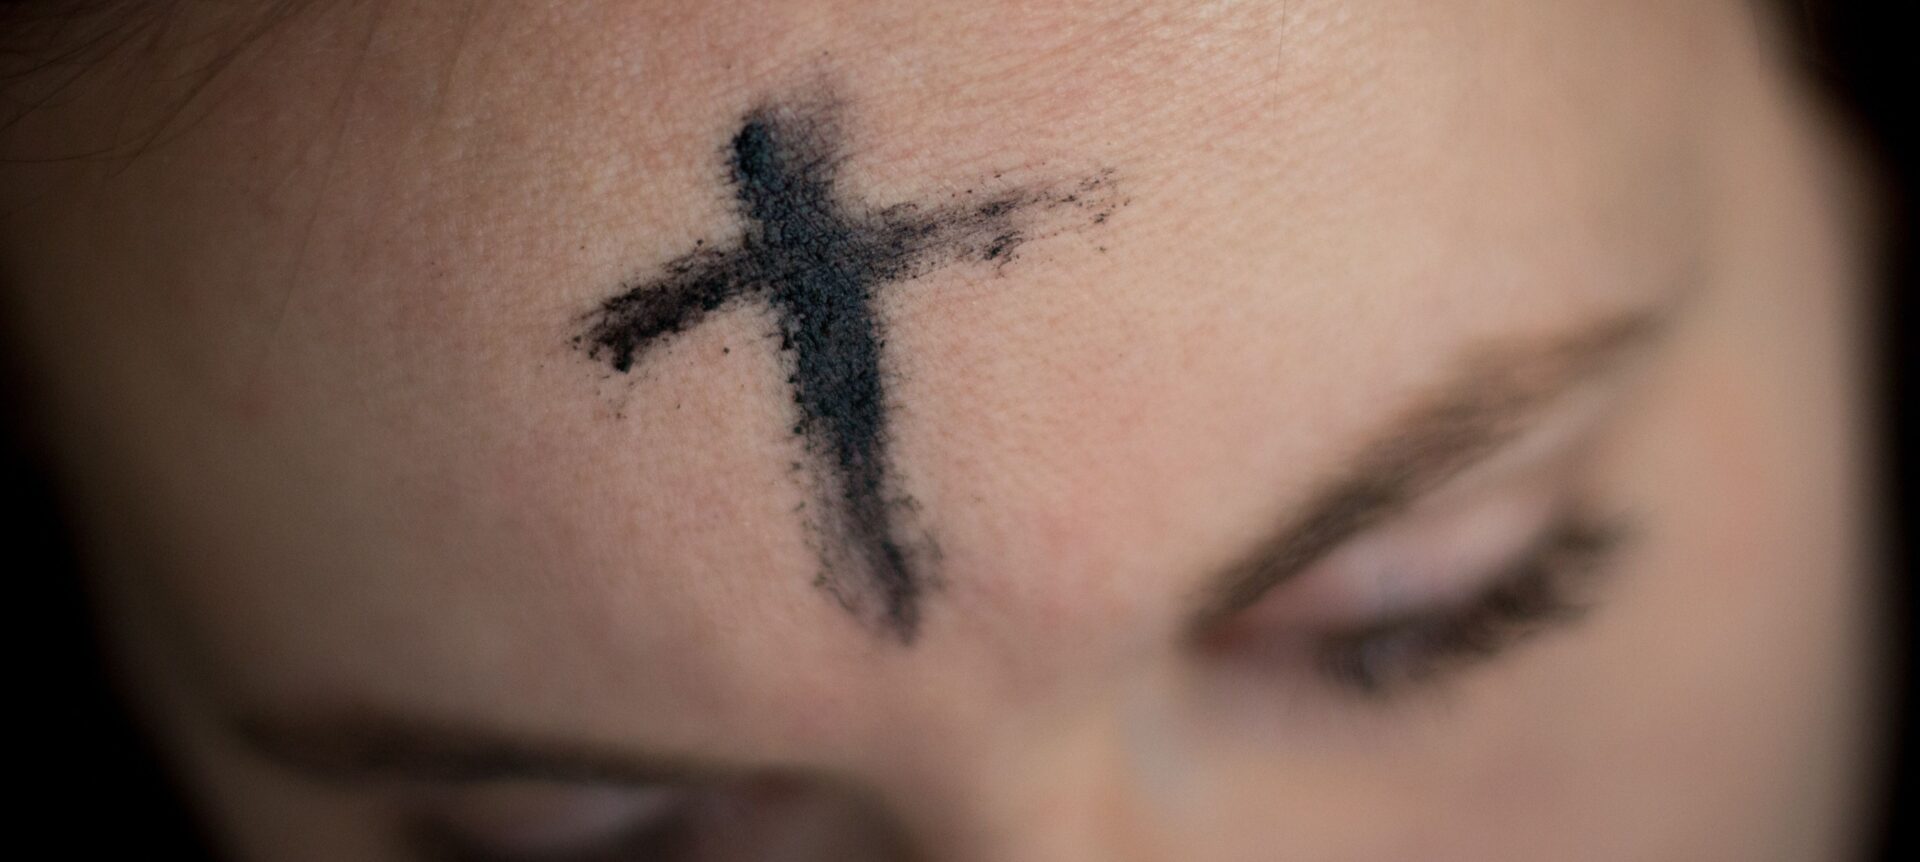 Avec les contraintes sanitaires, les prêtres ne pourront sans doute pas tracer la croix de cendres sur les fronts | © Ahna Ziegler sur Unsplash